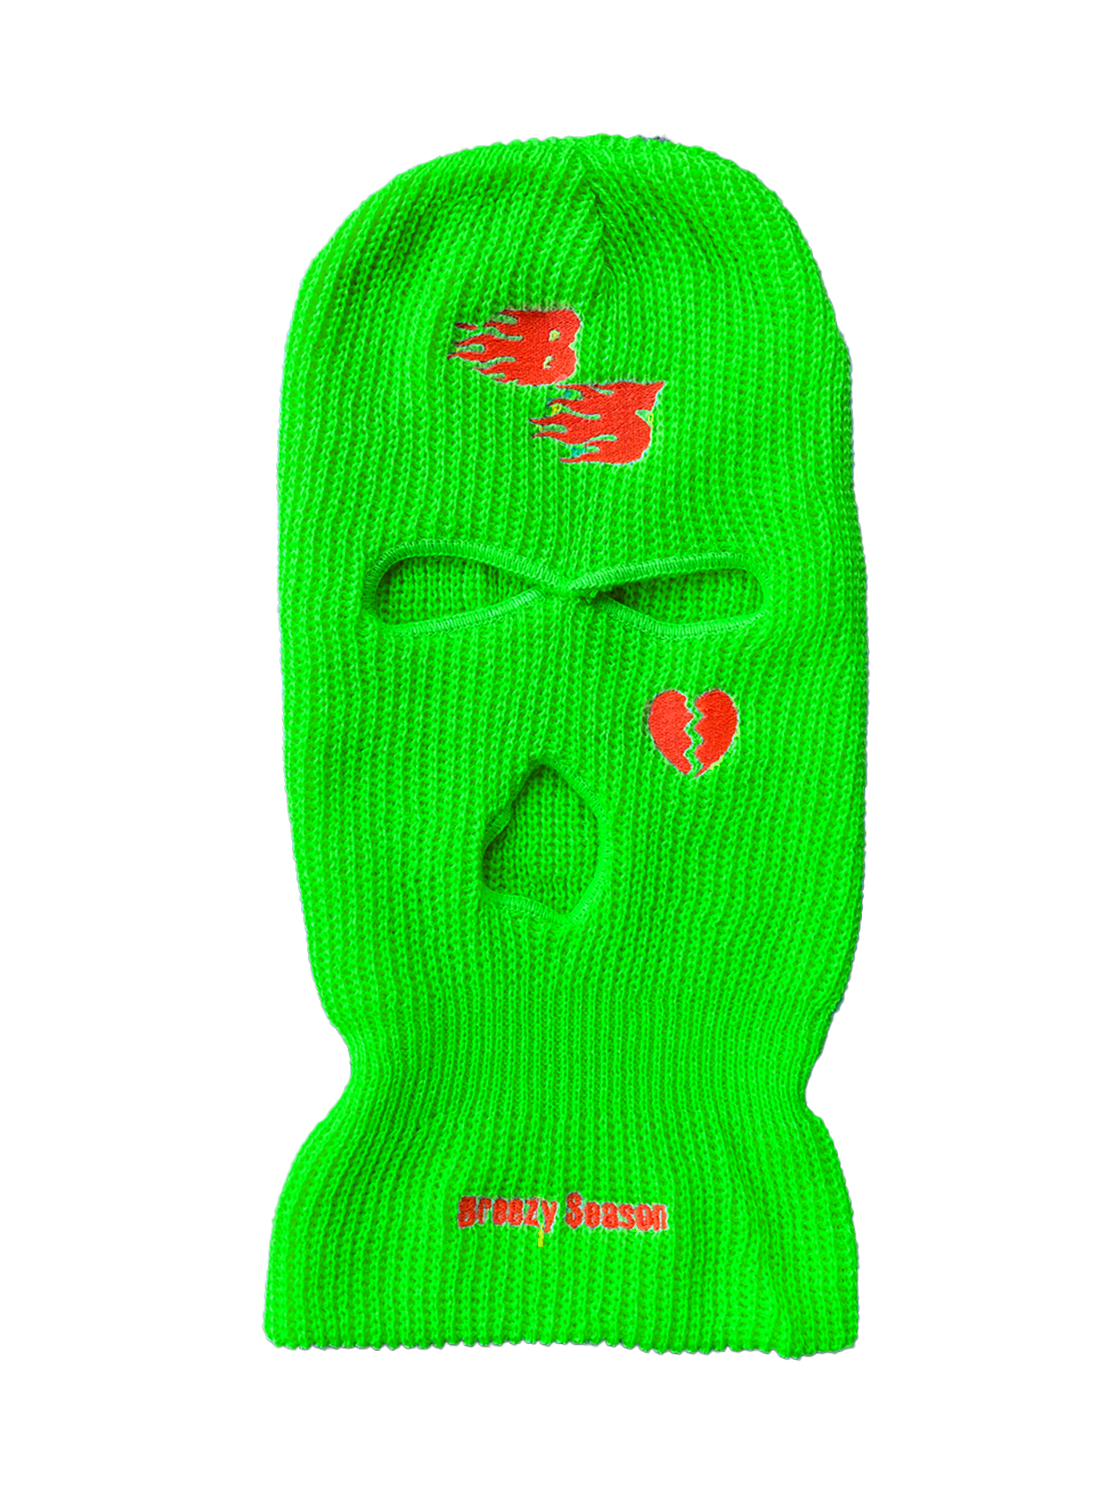 Neon Green Ski Mask - Breezy Season 